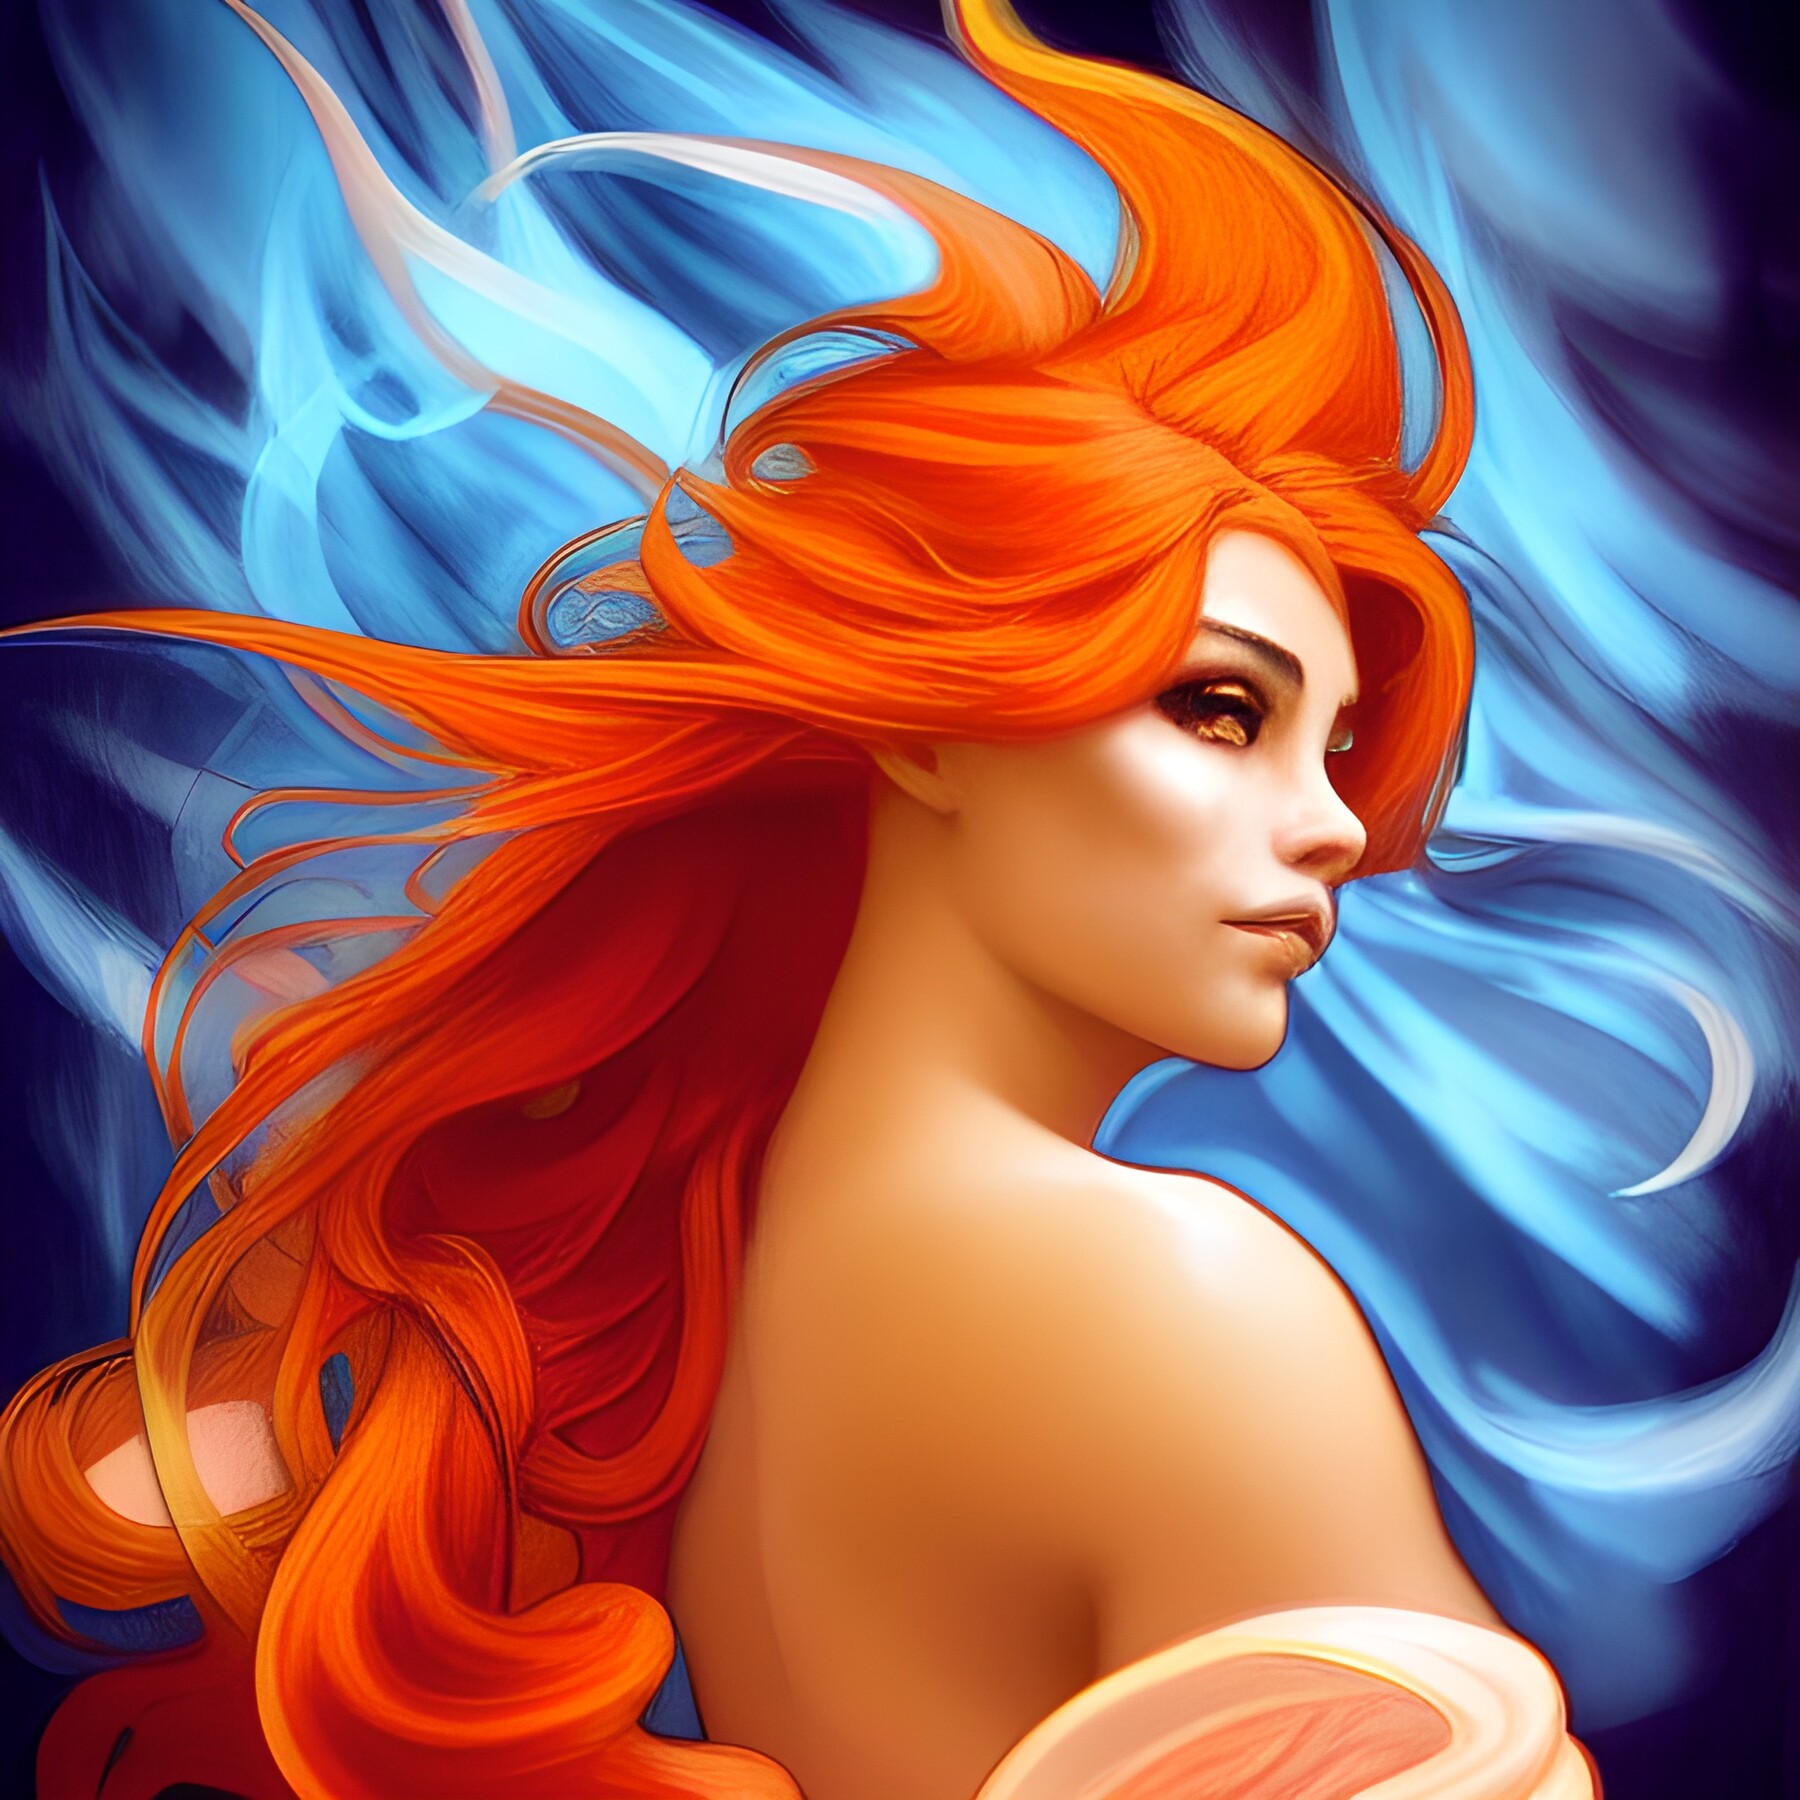 ArtStation - Orange hair fire goddess | Artworks